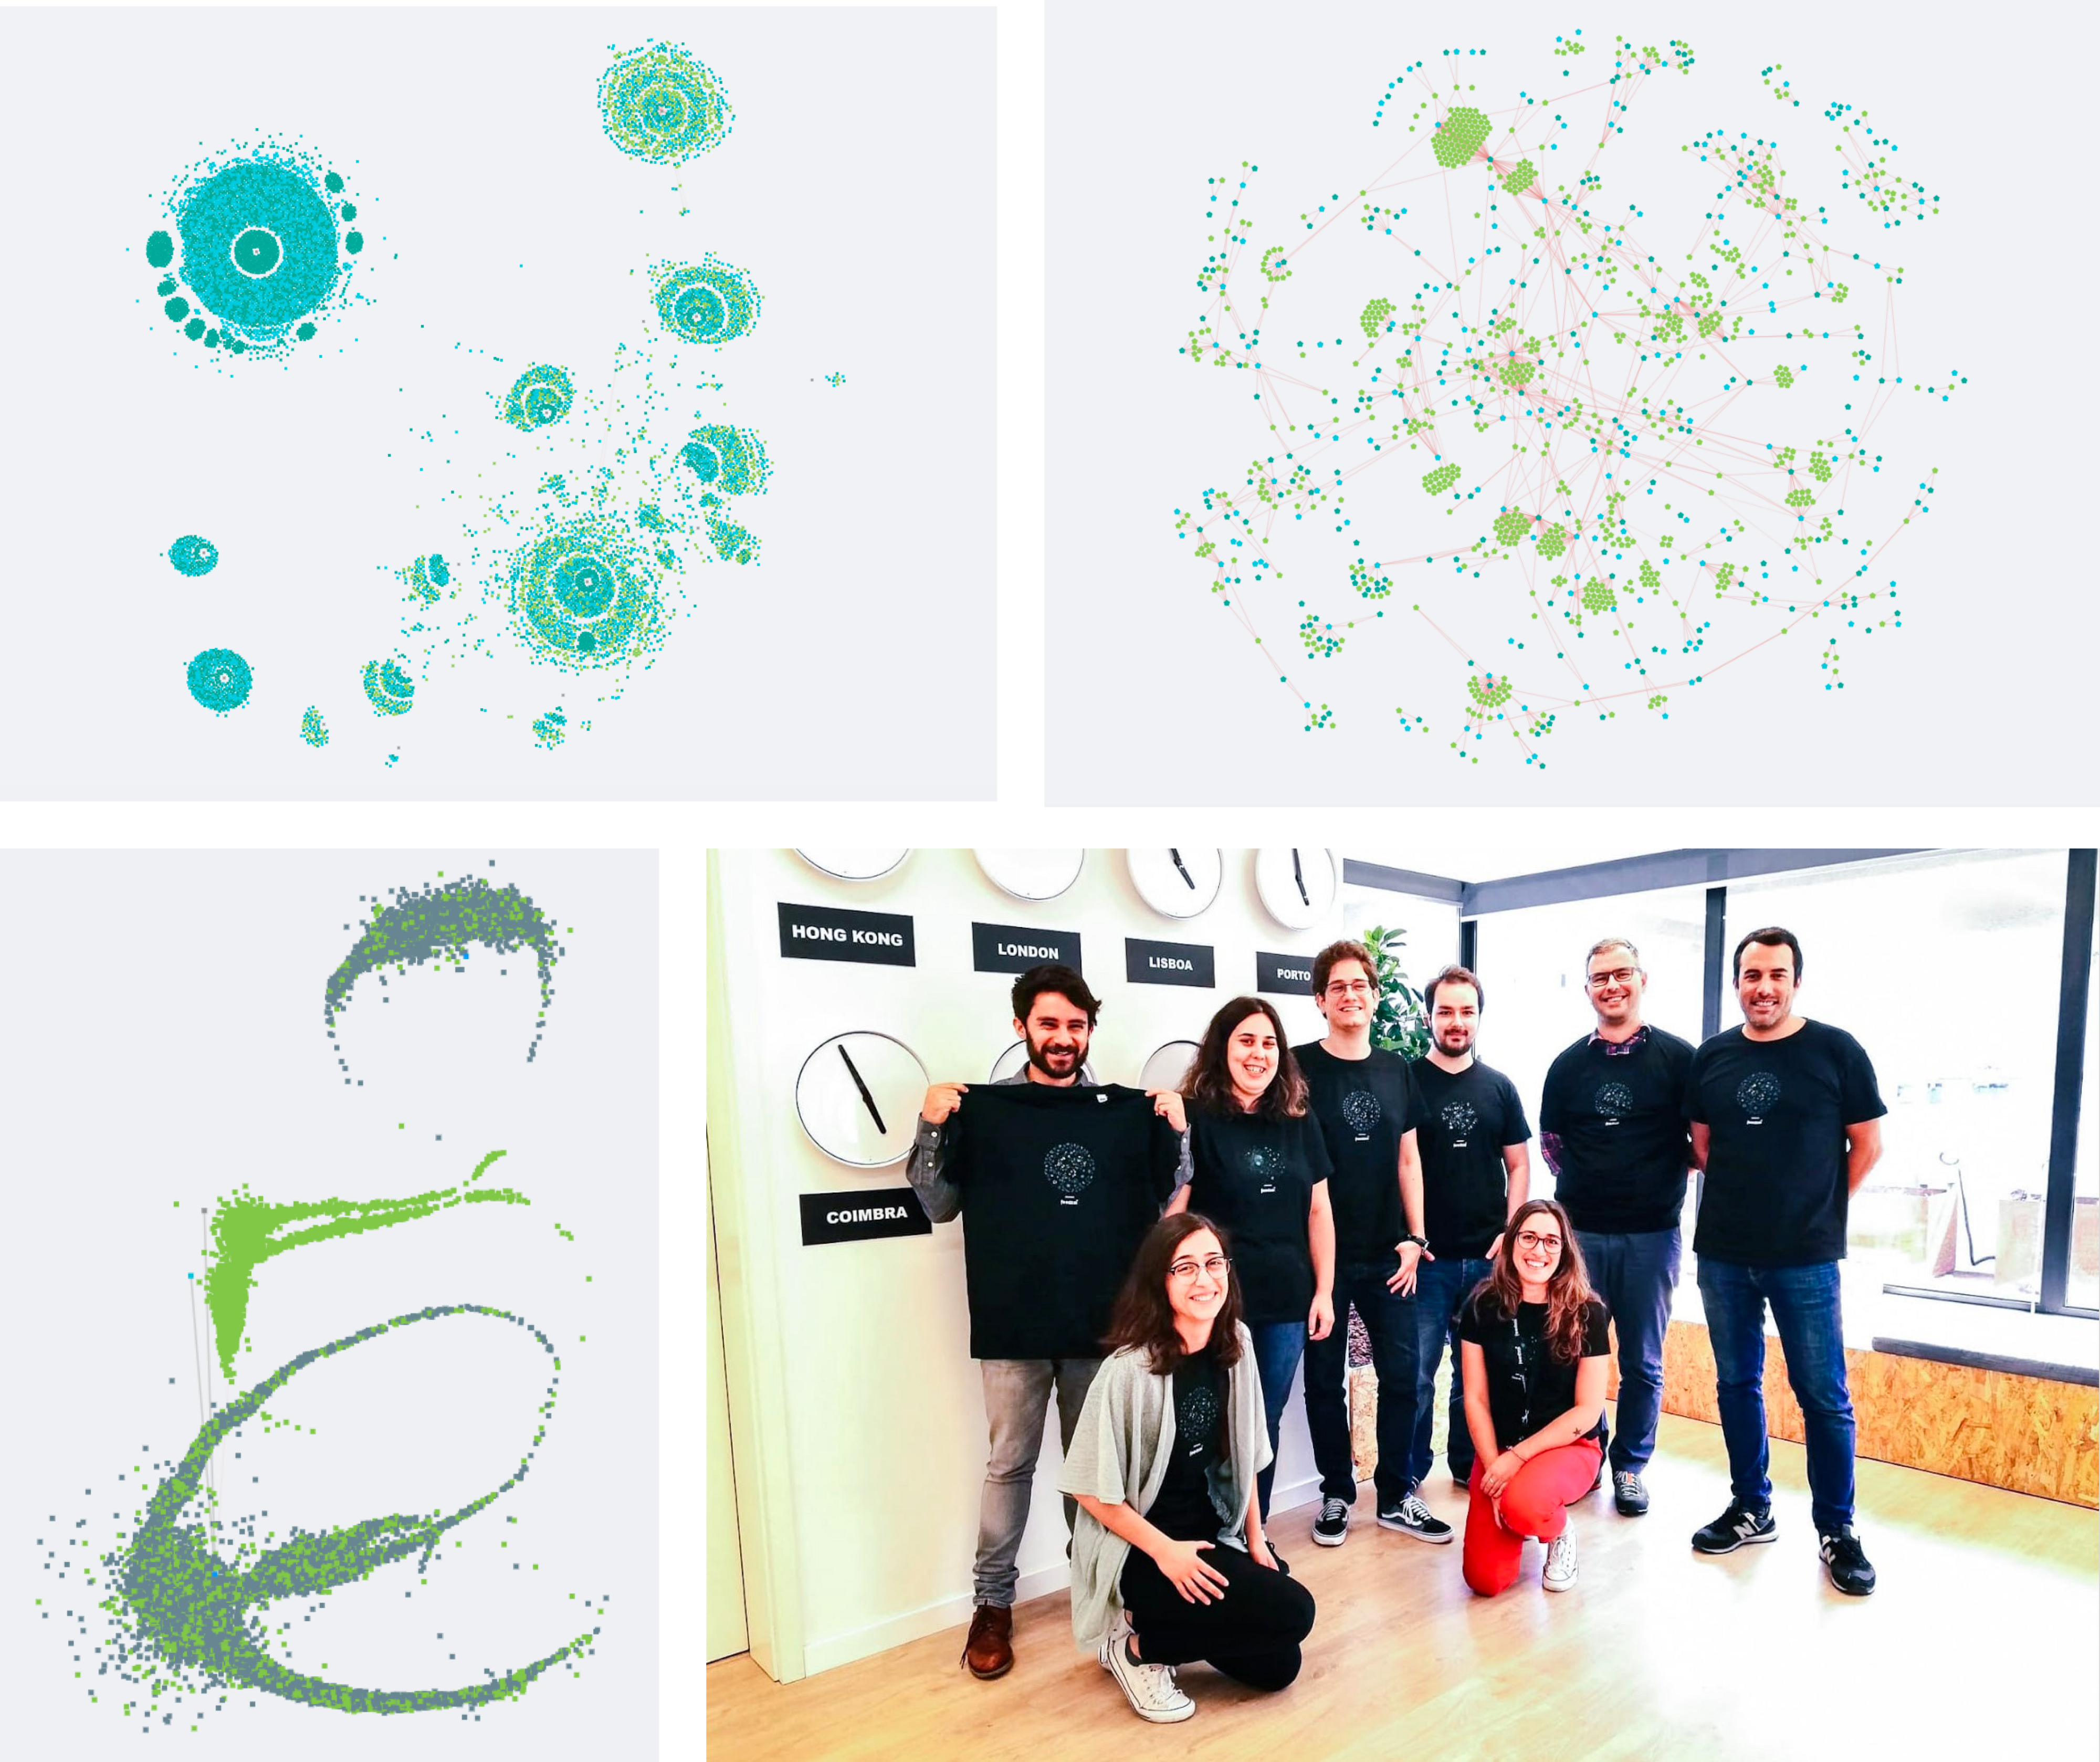 3 imagens de “Arte de Dados do Genome” e uma imagem de pessoas vestindo camisas combinando